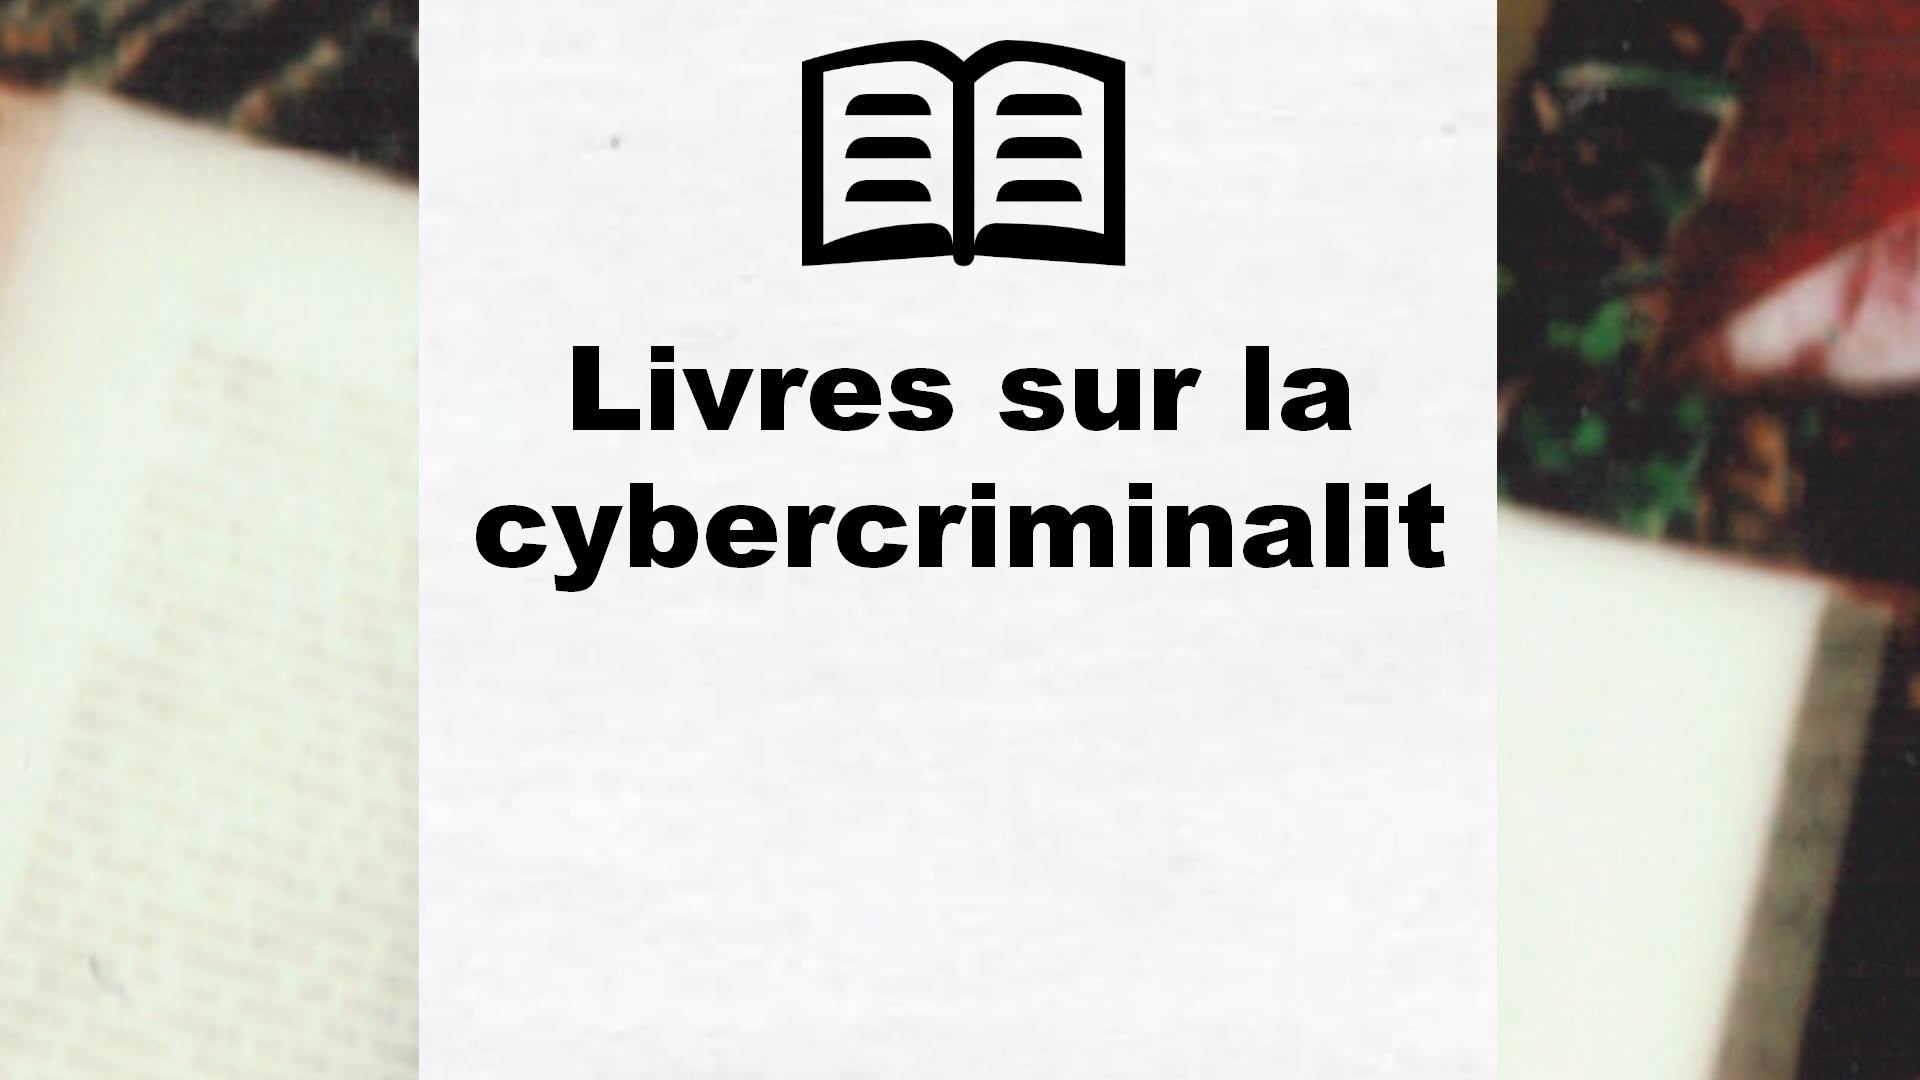 Livres sur la cybercriminalité